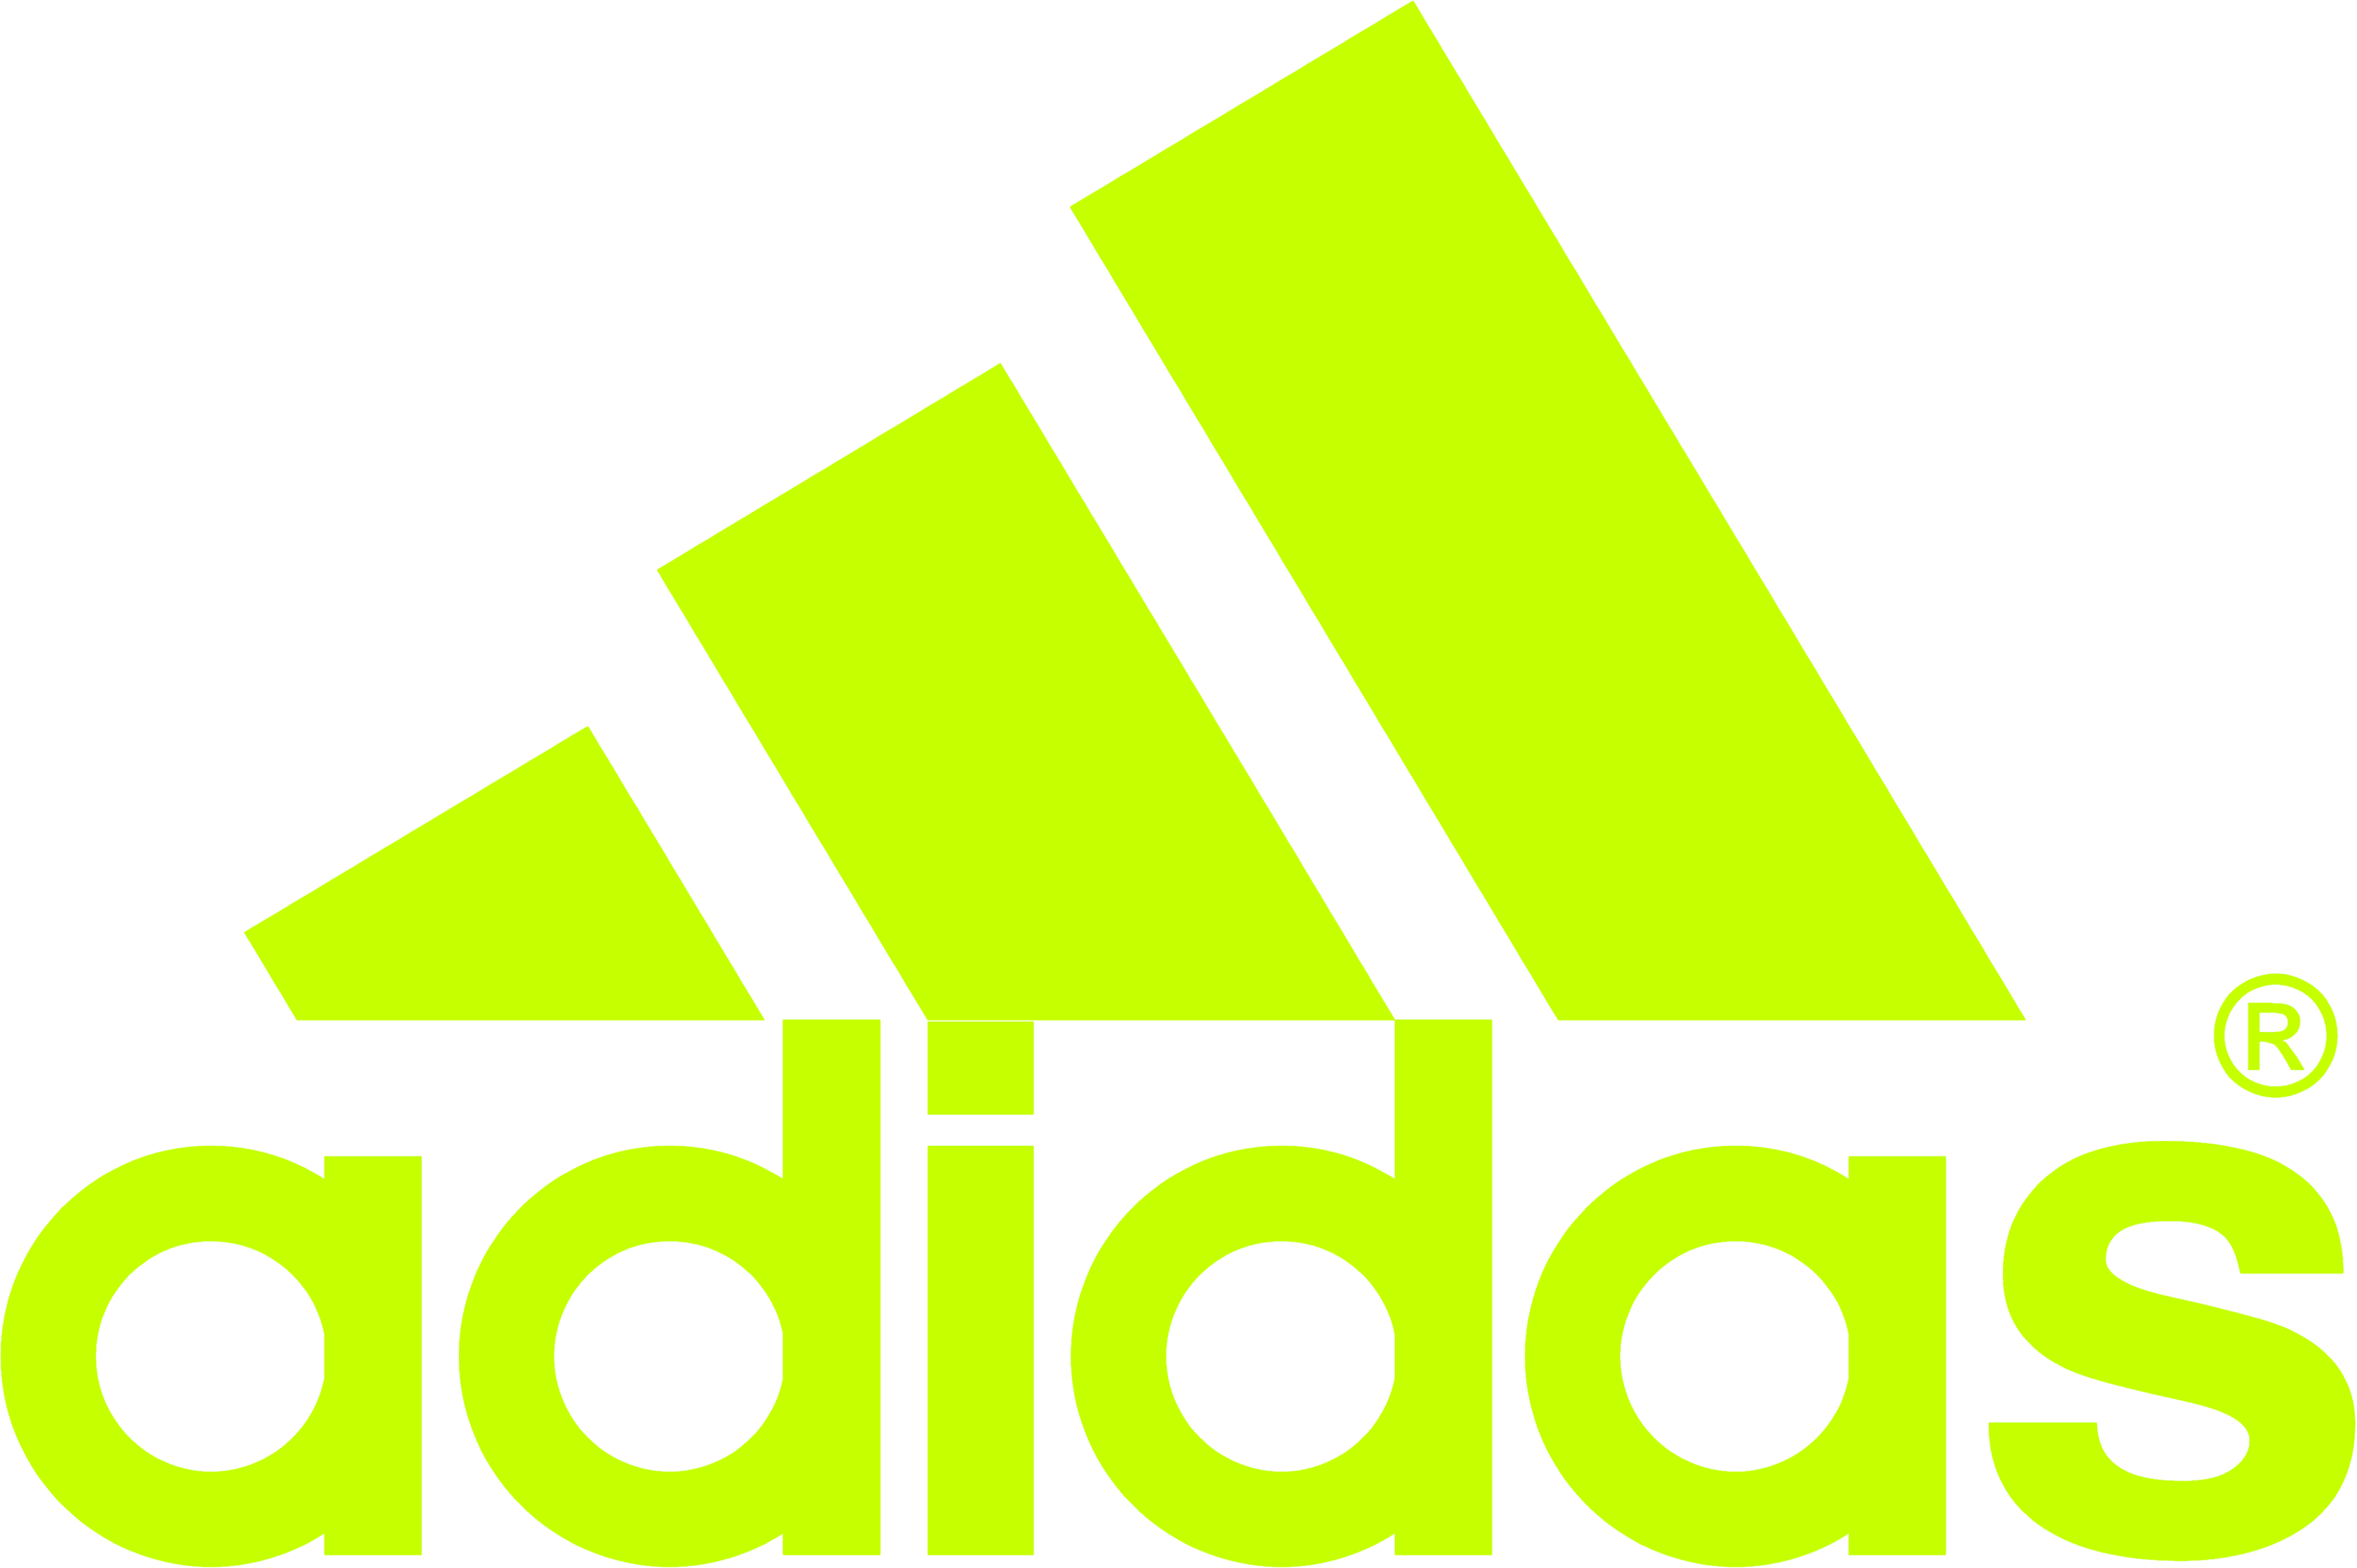 Green Adidas Logo - Adidas logo PNG images free download